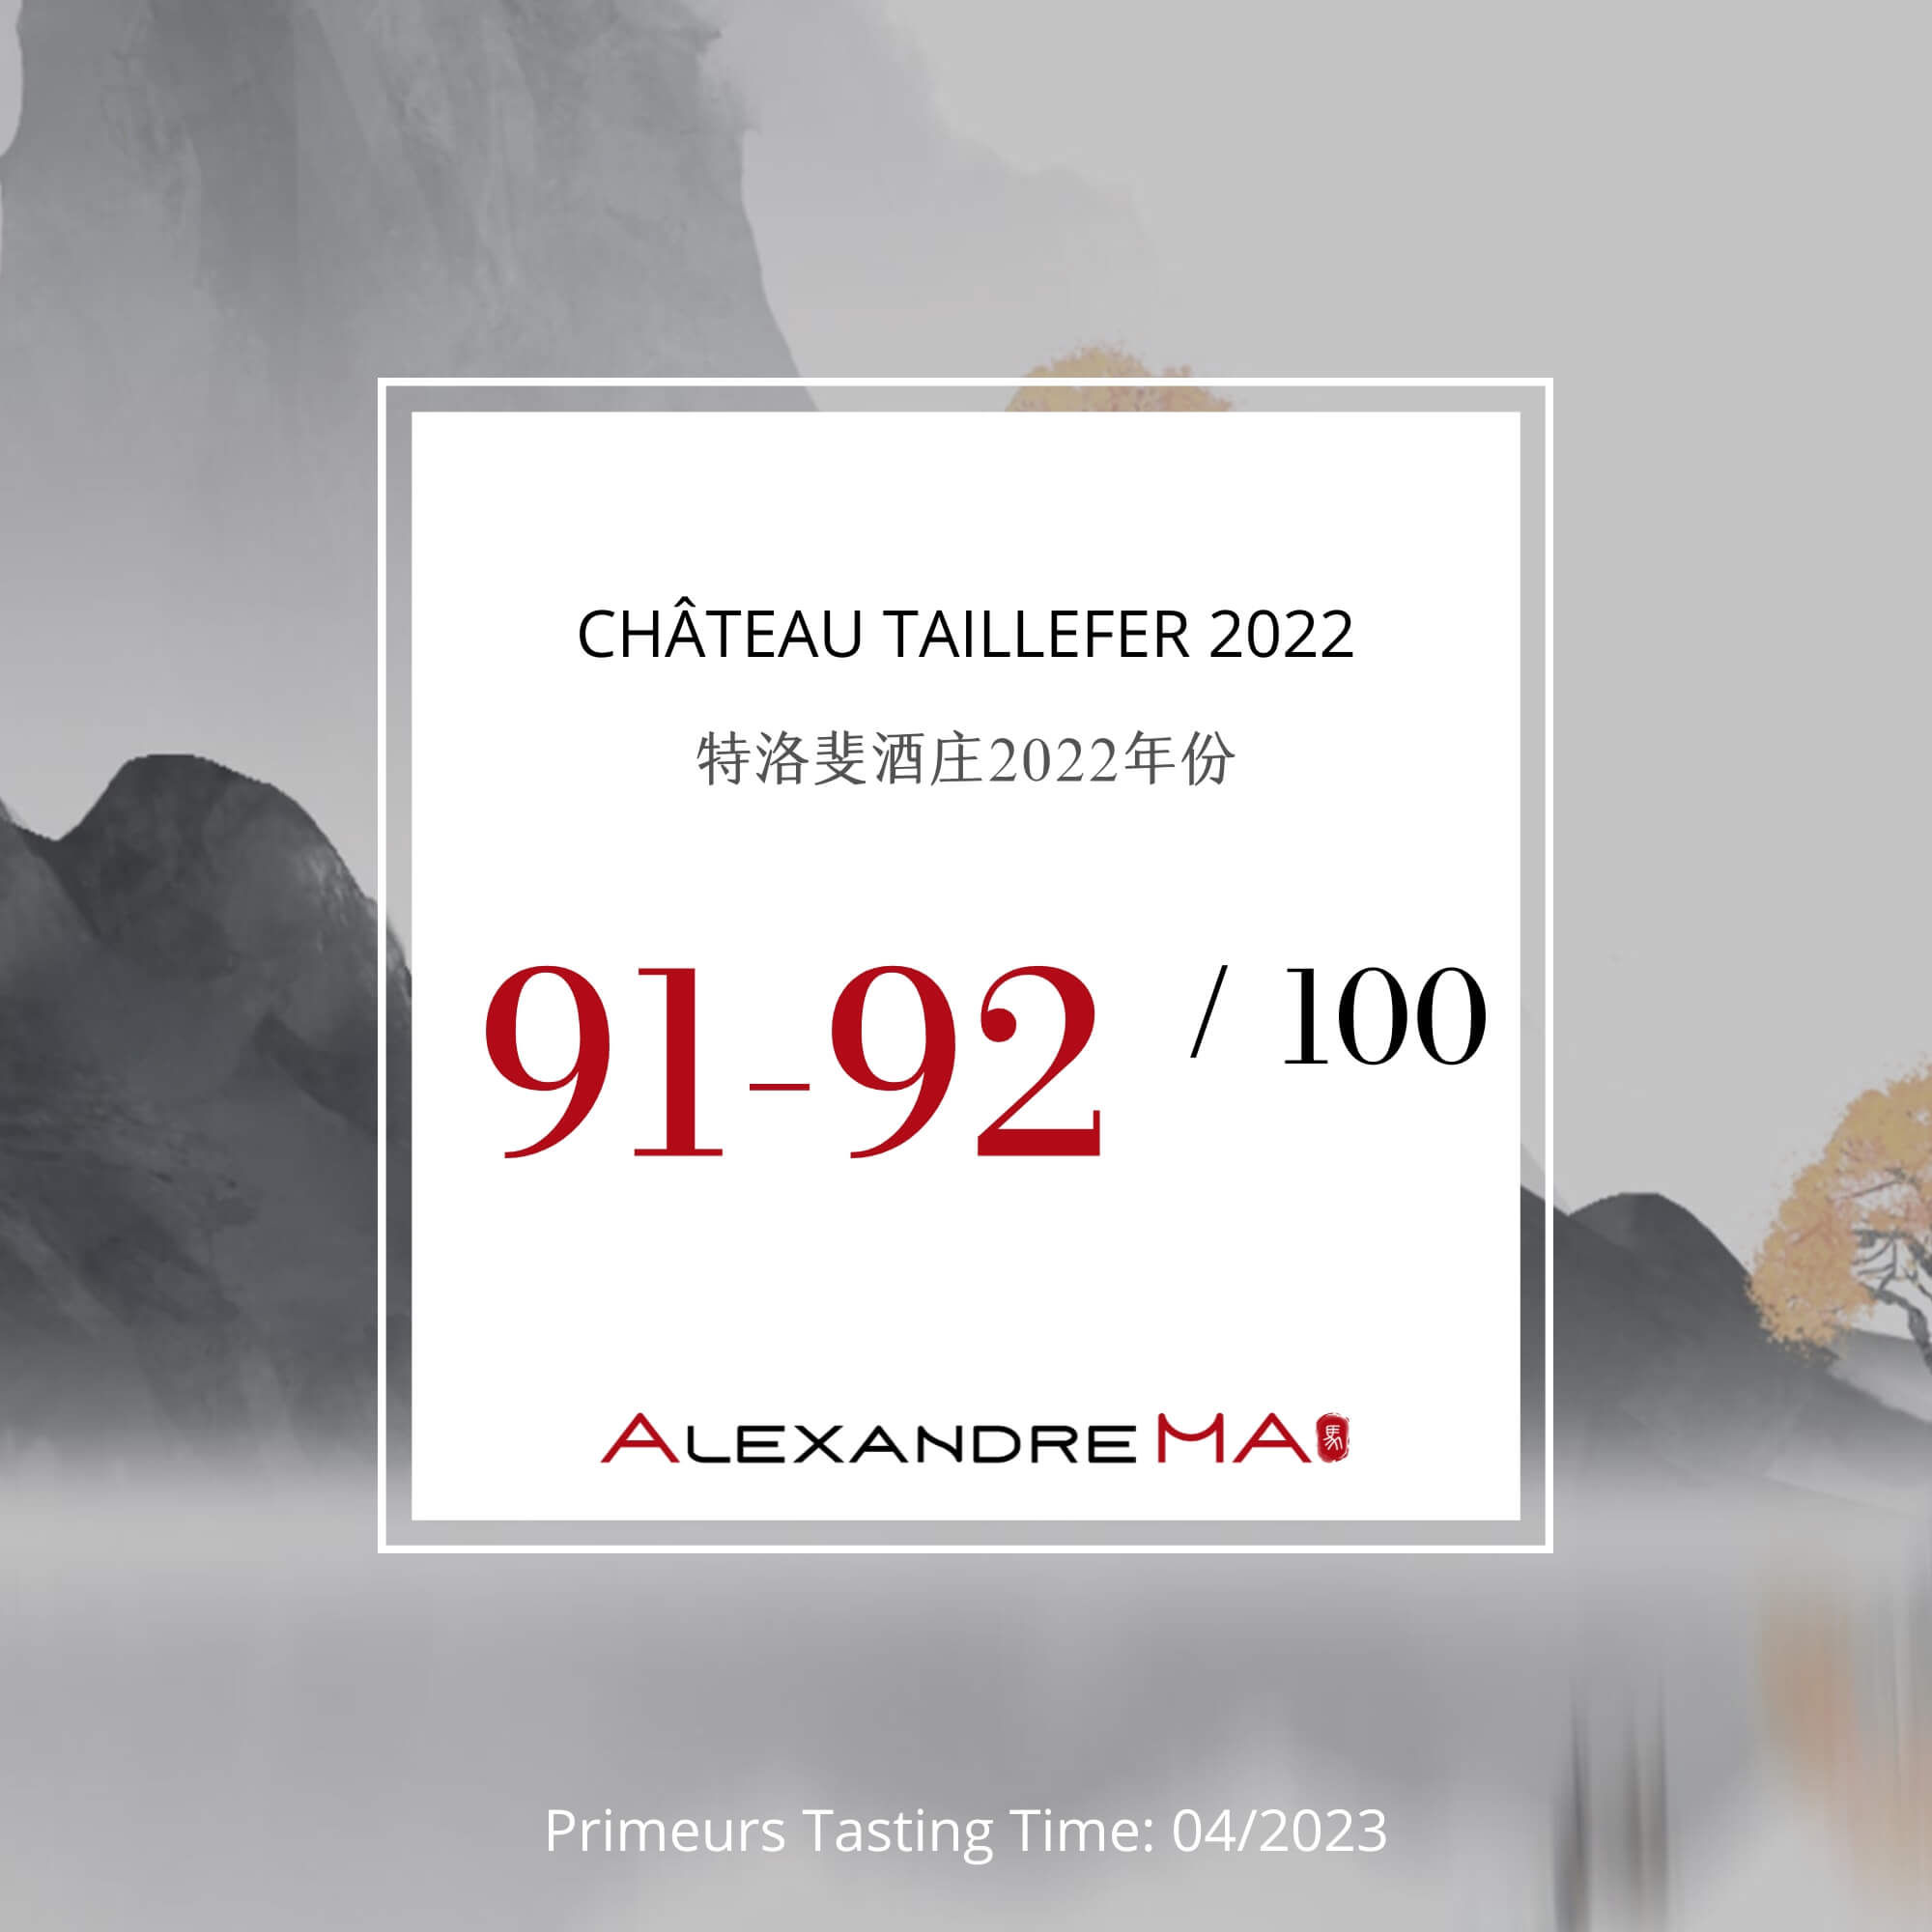 Château Taillefer 2022 Primeurs - Alexandre MA